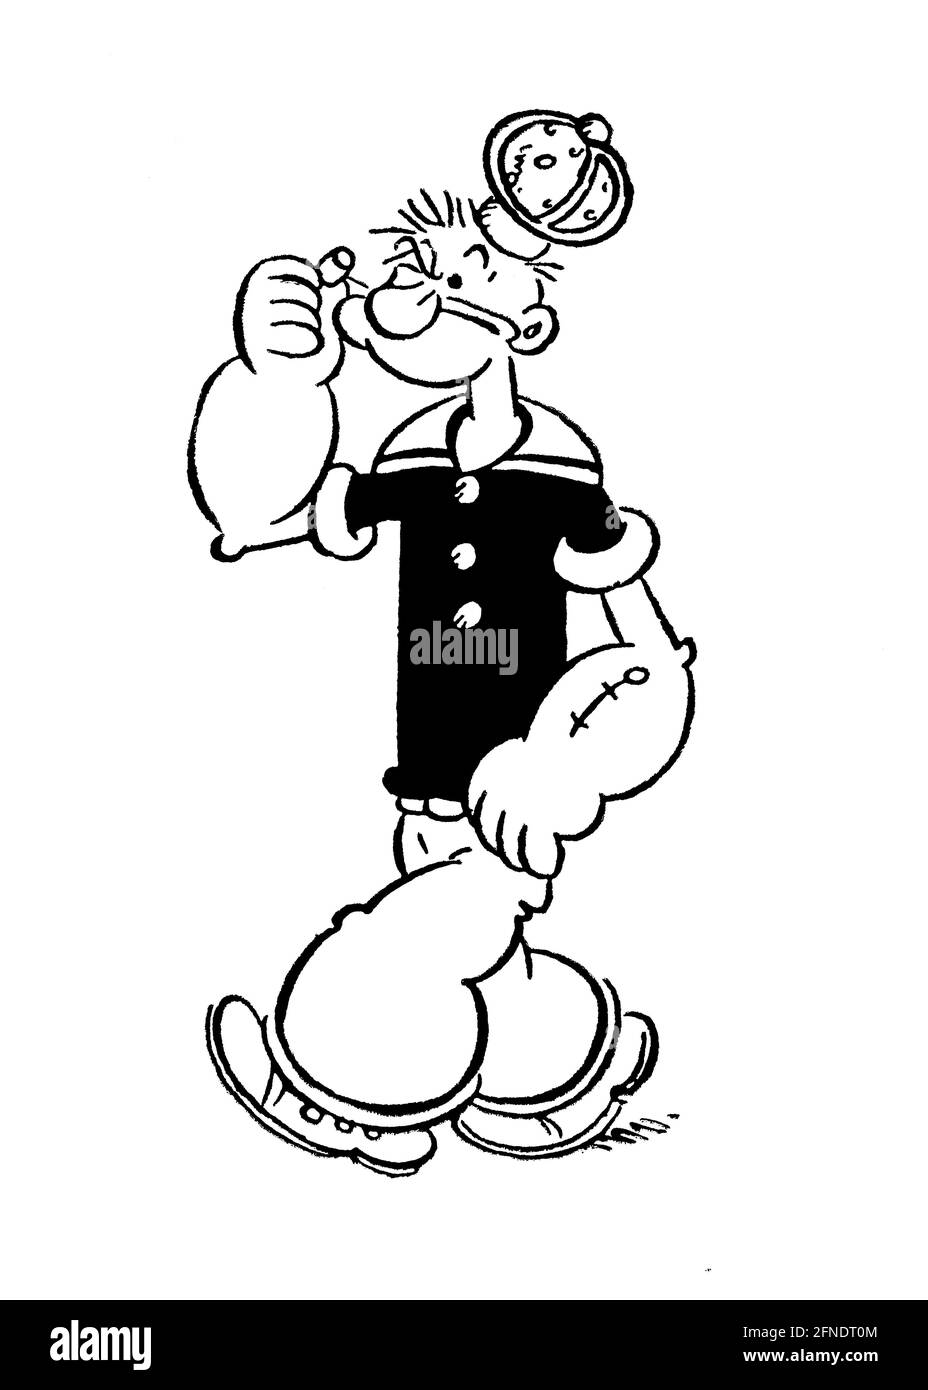 Popeye, el marino, personaje que apareció por primera vez en la tira cómica  Timble Theatre de King Features Syndicate, en la edición del New York  Evening Journal del 17 de enero de